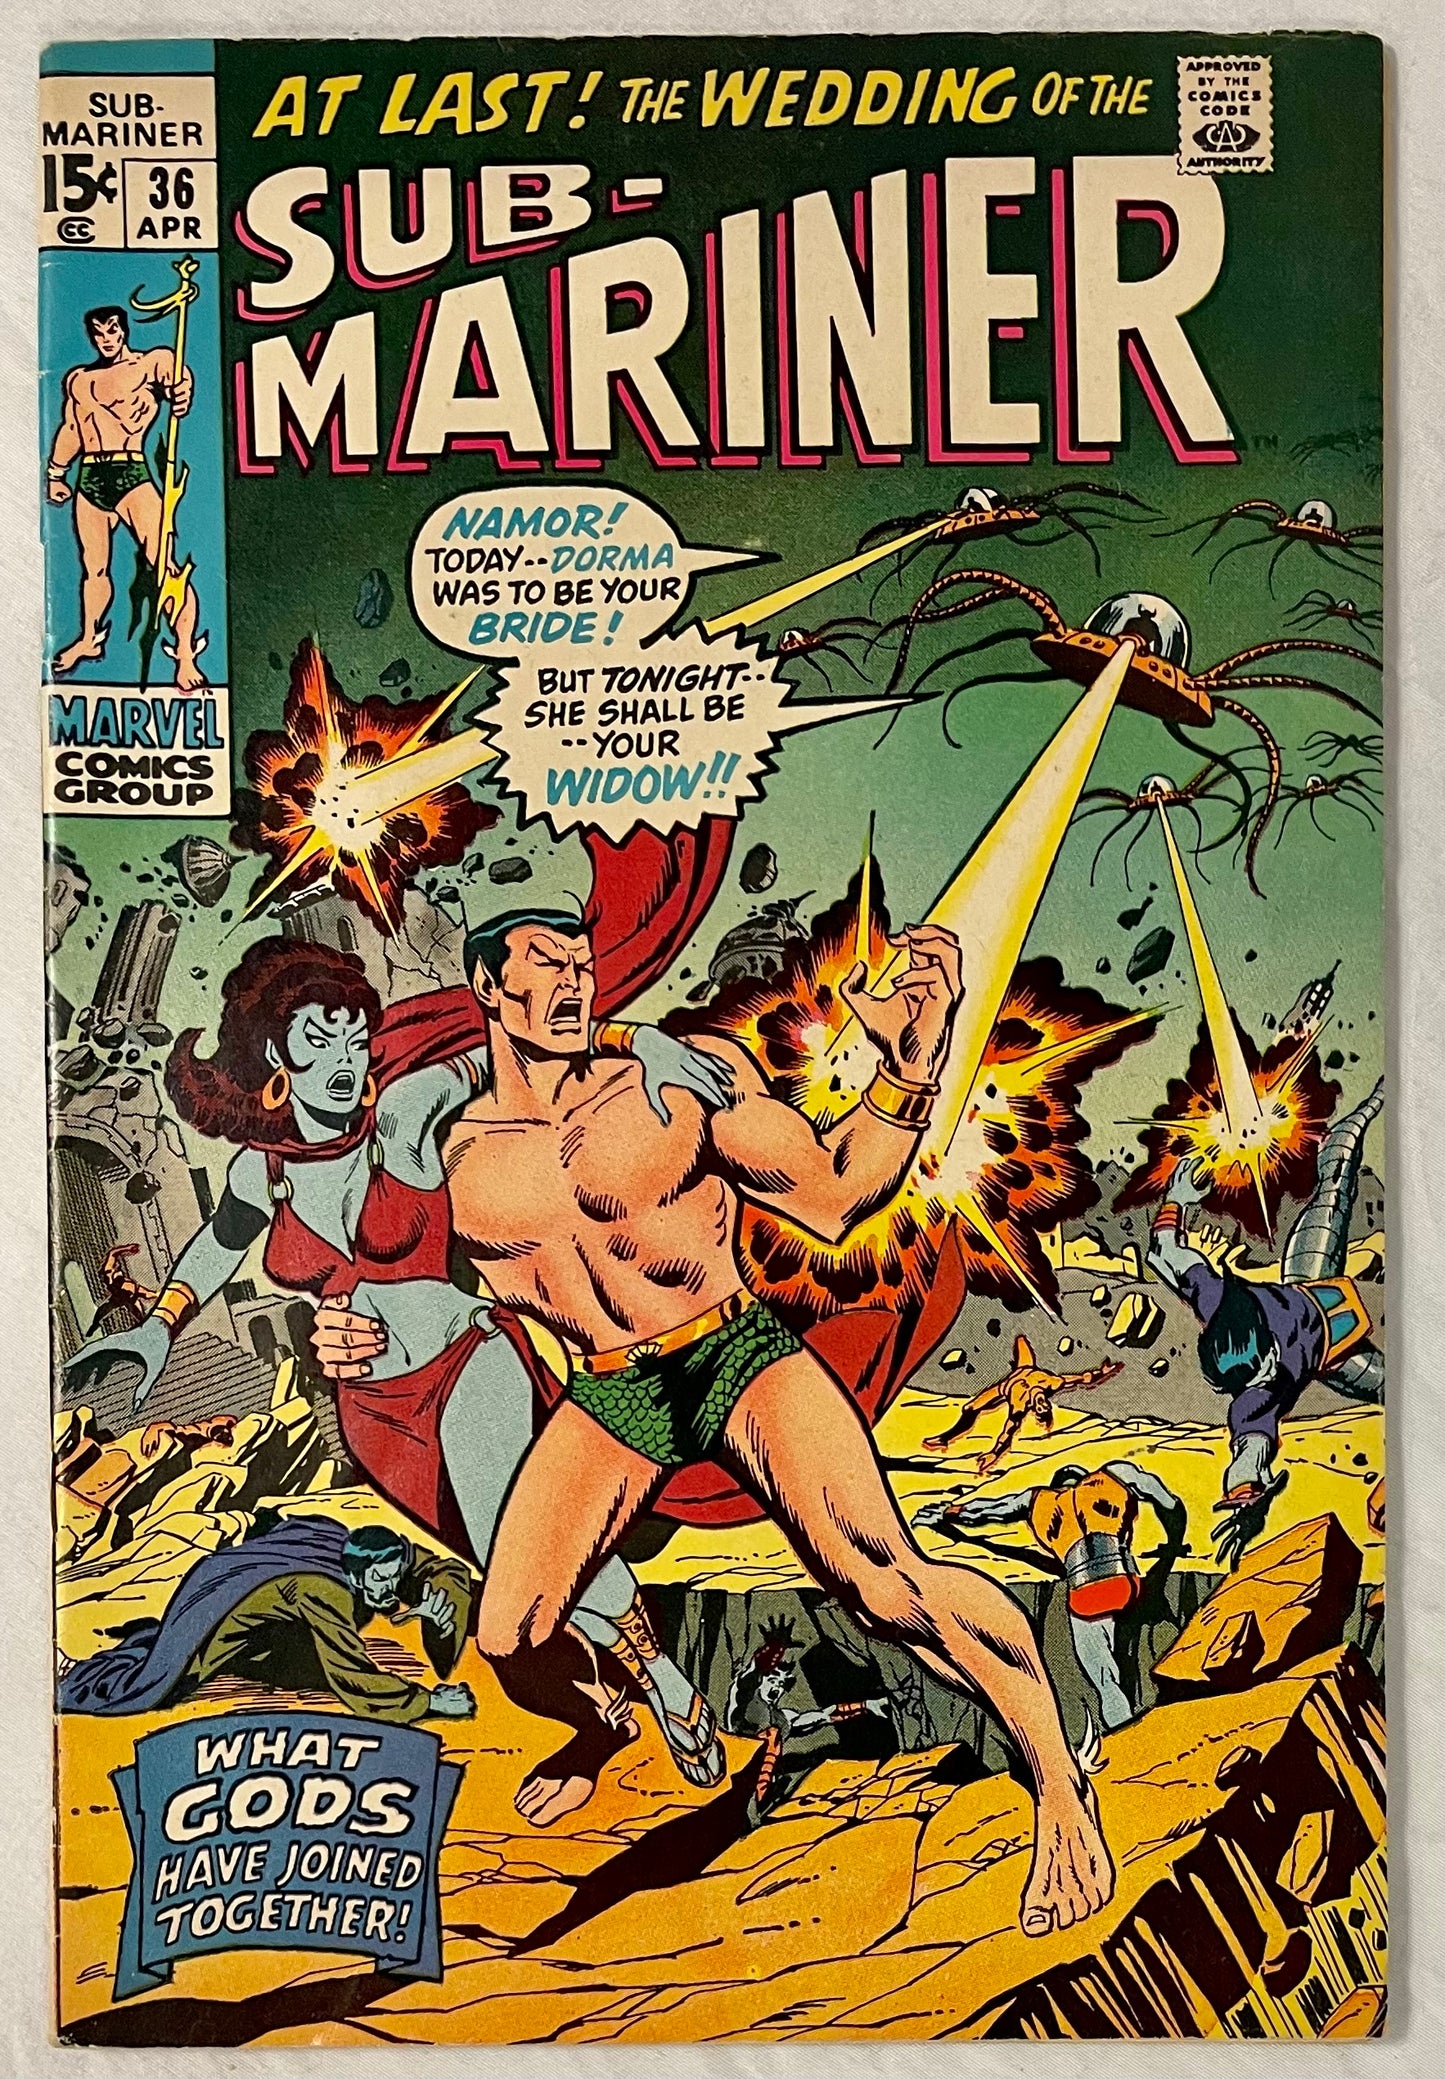 Marvel Comics Sub-Mariner #36